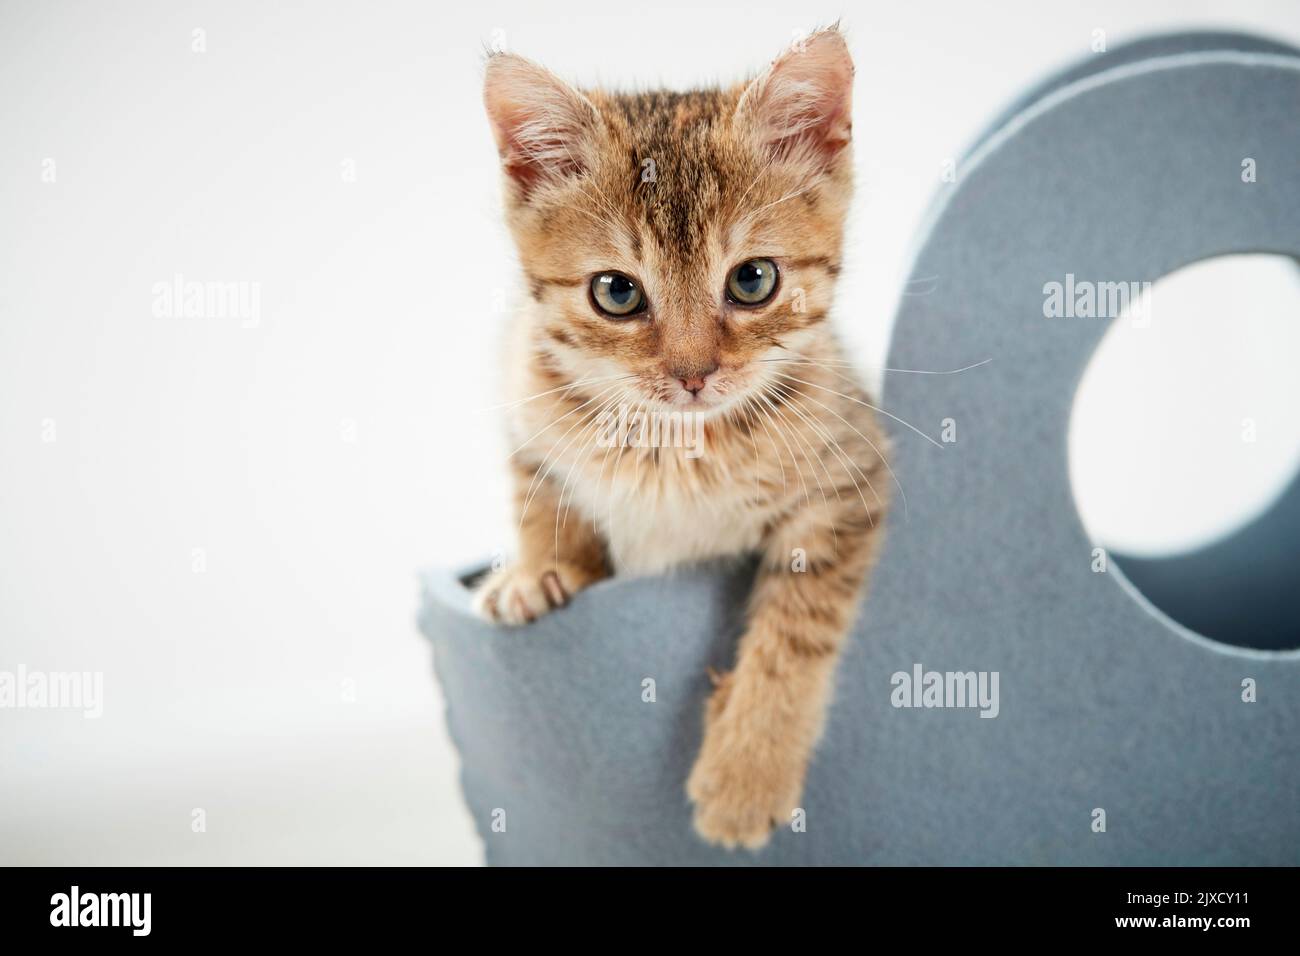 Chat domestique Un chaton tabby regarde d'un sac de feutre, Allemagne Banque D'Images